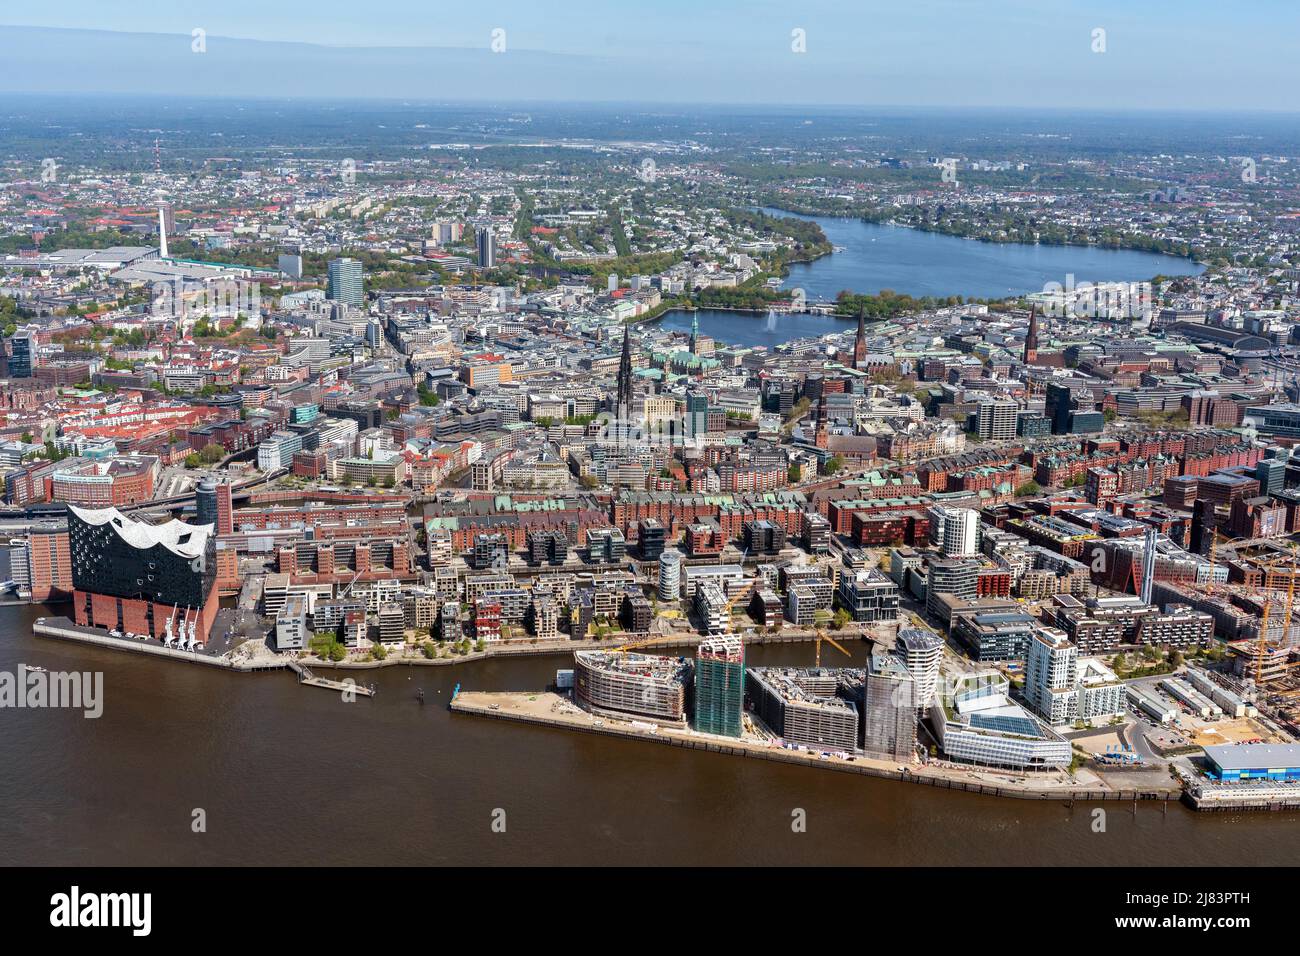 HafenCity à l'Alster, vue aérienne sur la ville Hambourg, Hafencity, Speicherstadt, Alster, salle philharmonique d'Elbe, Tour de télévision, église, centre-ville Banque D'Images